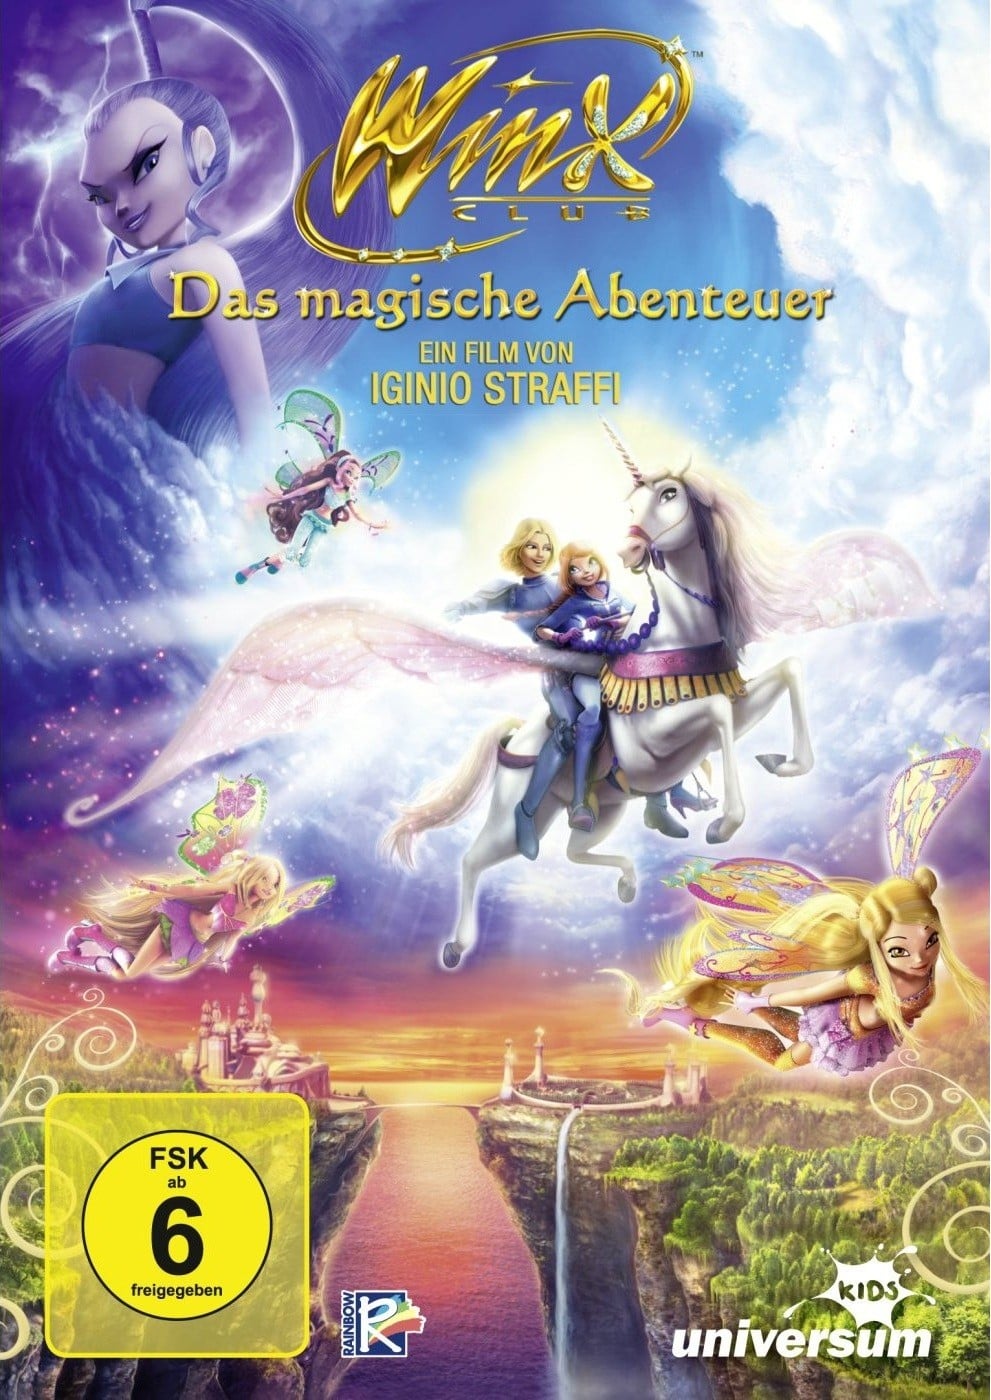 Plakat von "Winx Club - Das Magische Abenteuer"